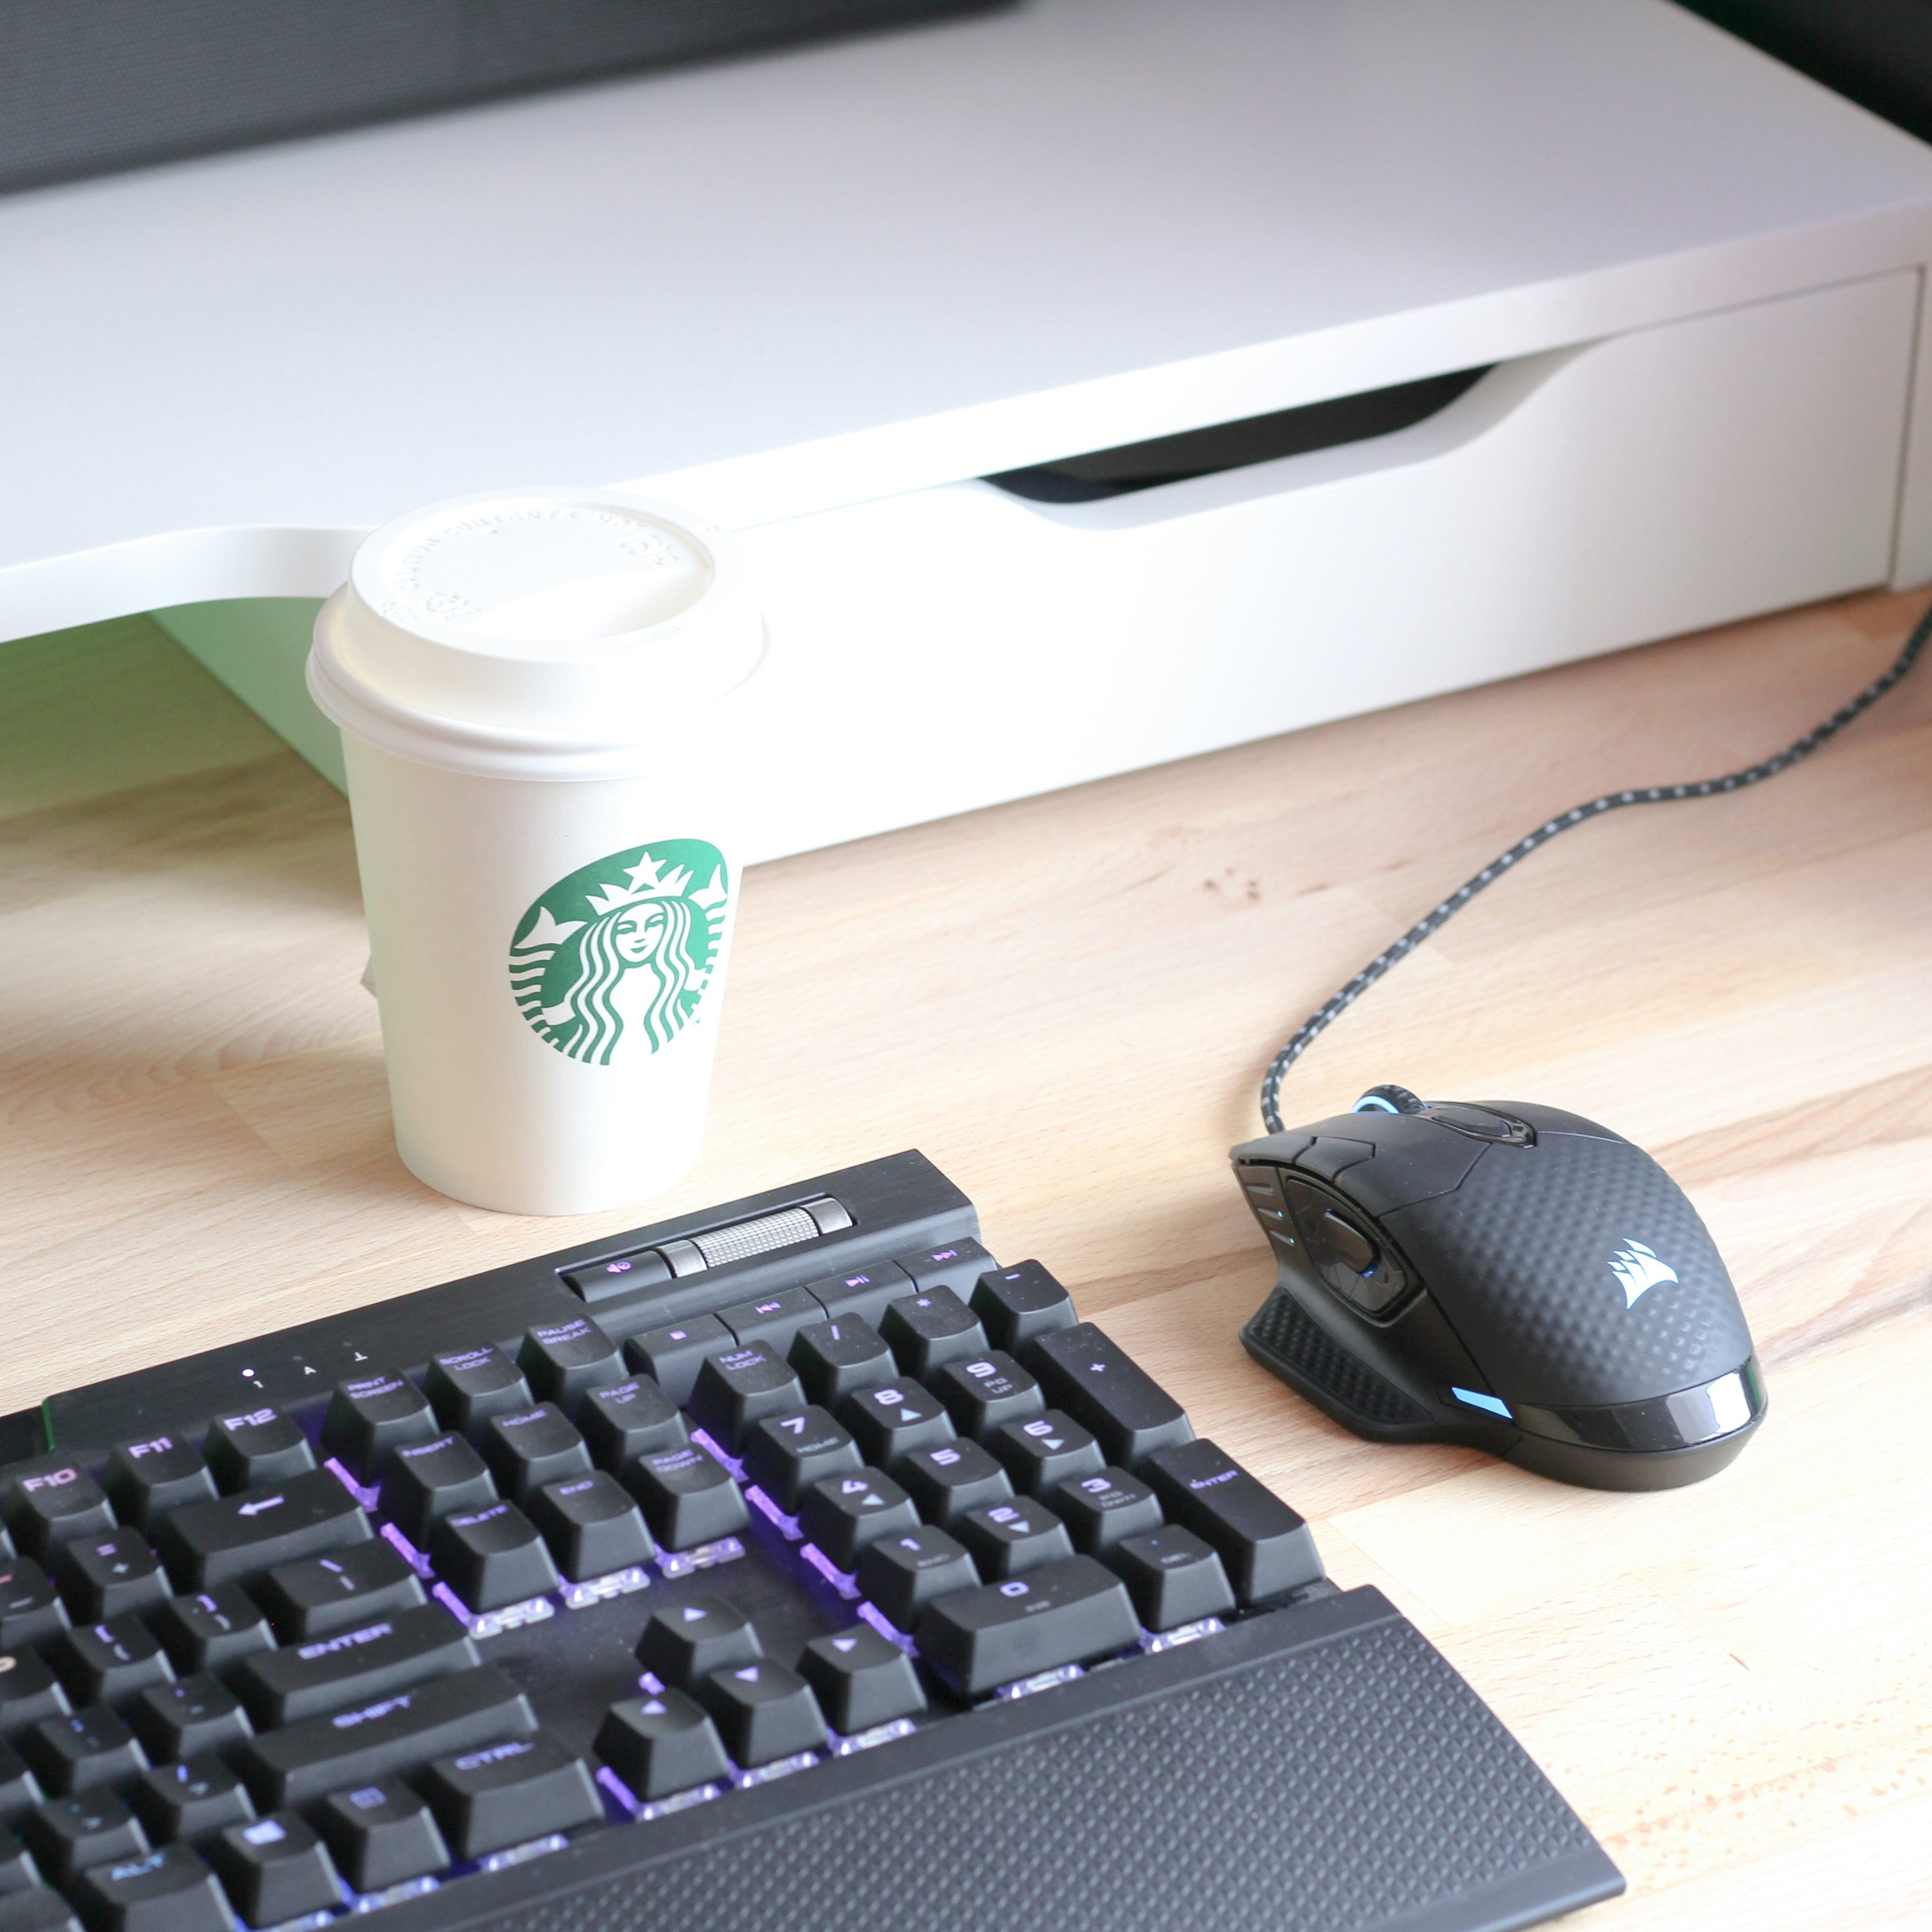 teclado de computadora negro junto a vaso desechable blanco y verde